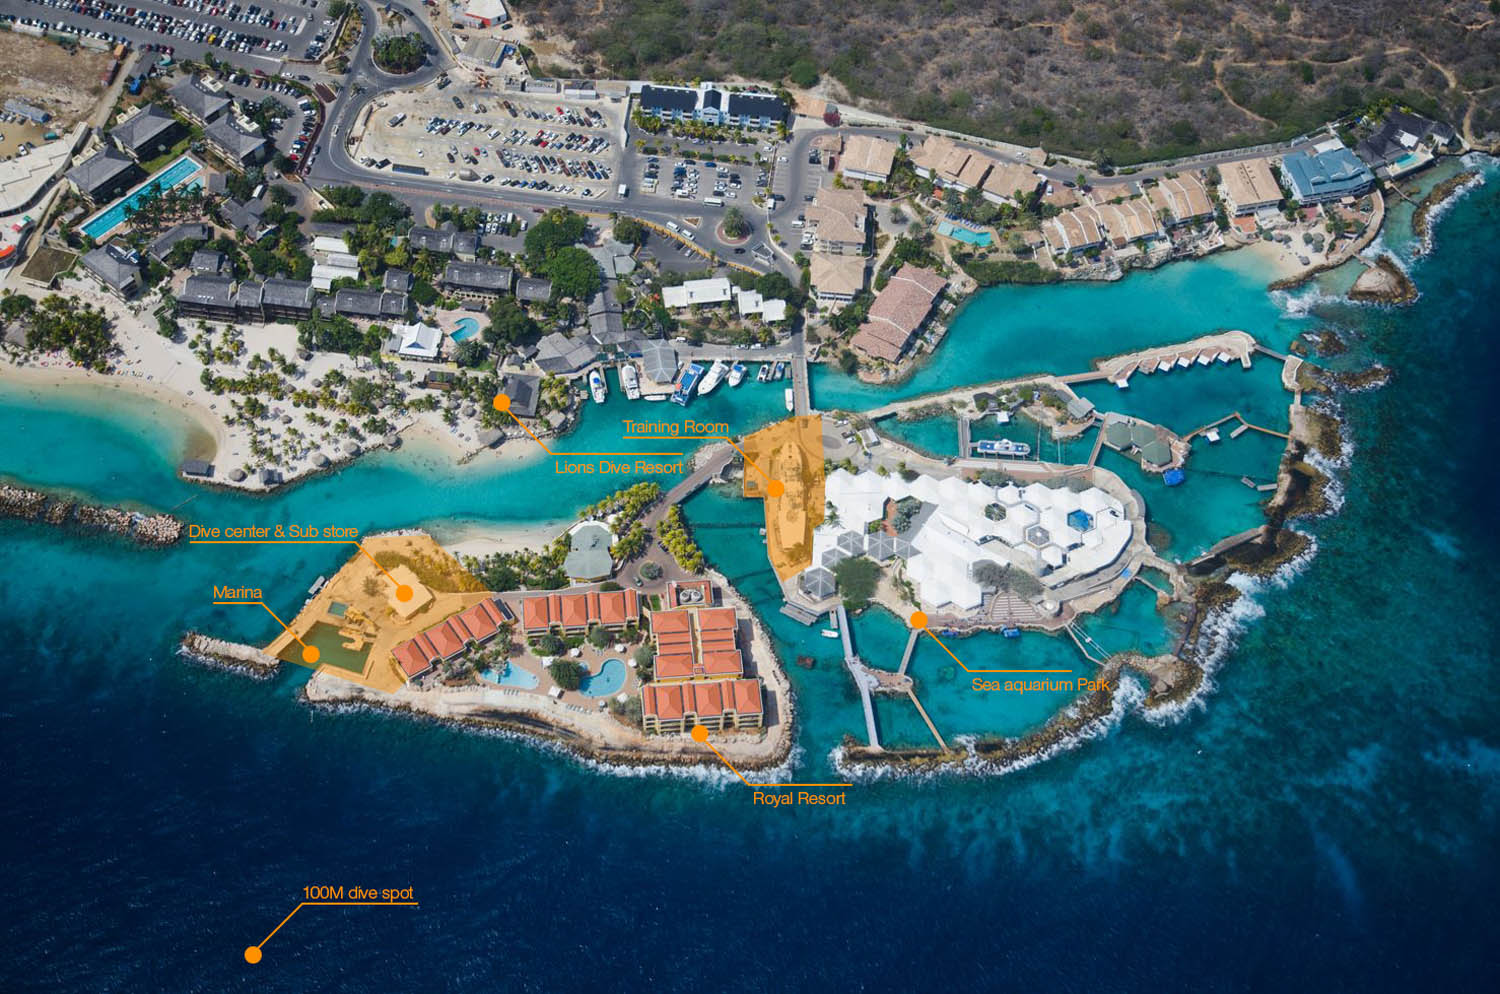 Sub Center Curaçao - Aerial View